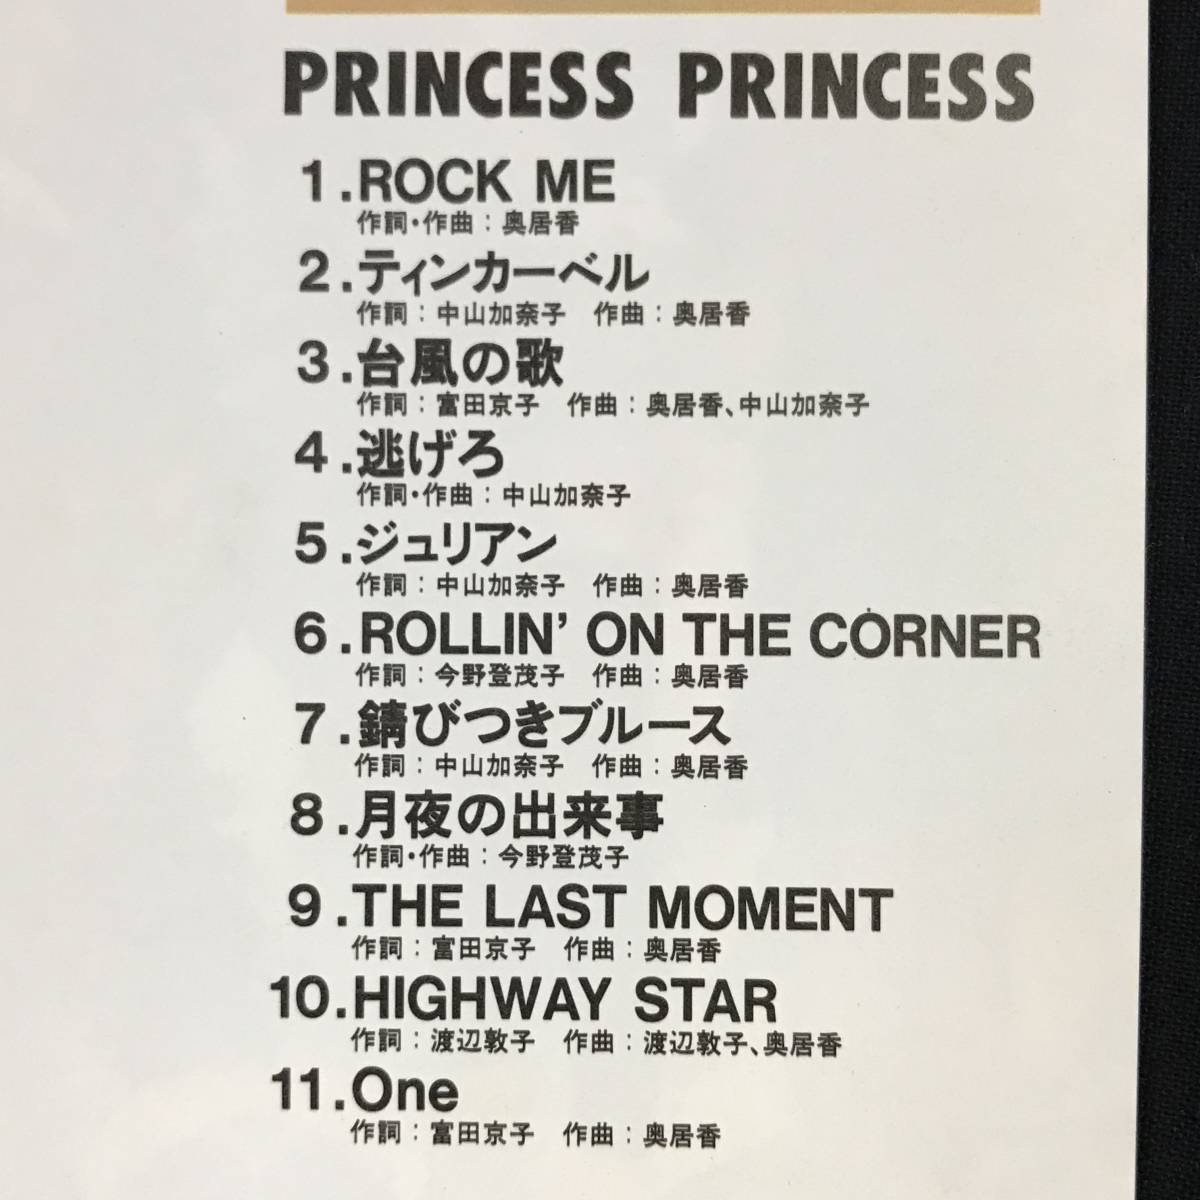 【中古 送料込】CDアルバム プリンセス プリンセス 「PRINCESS PRINCESS」 5枚目のアルバム 1990年発売◆B0410c_画像5